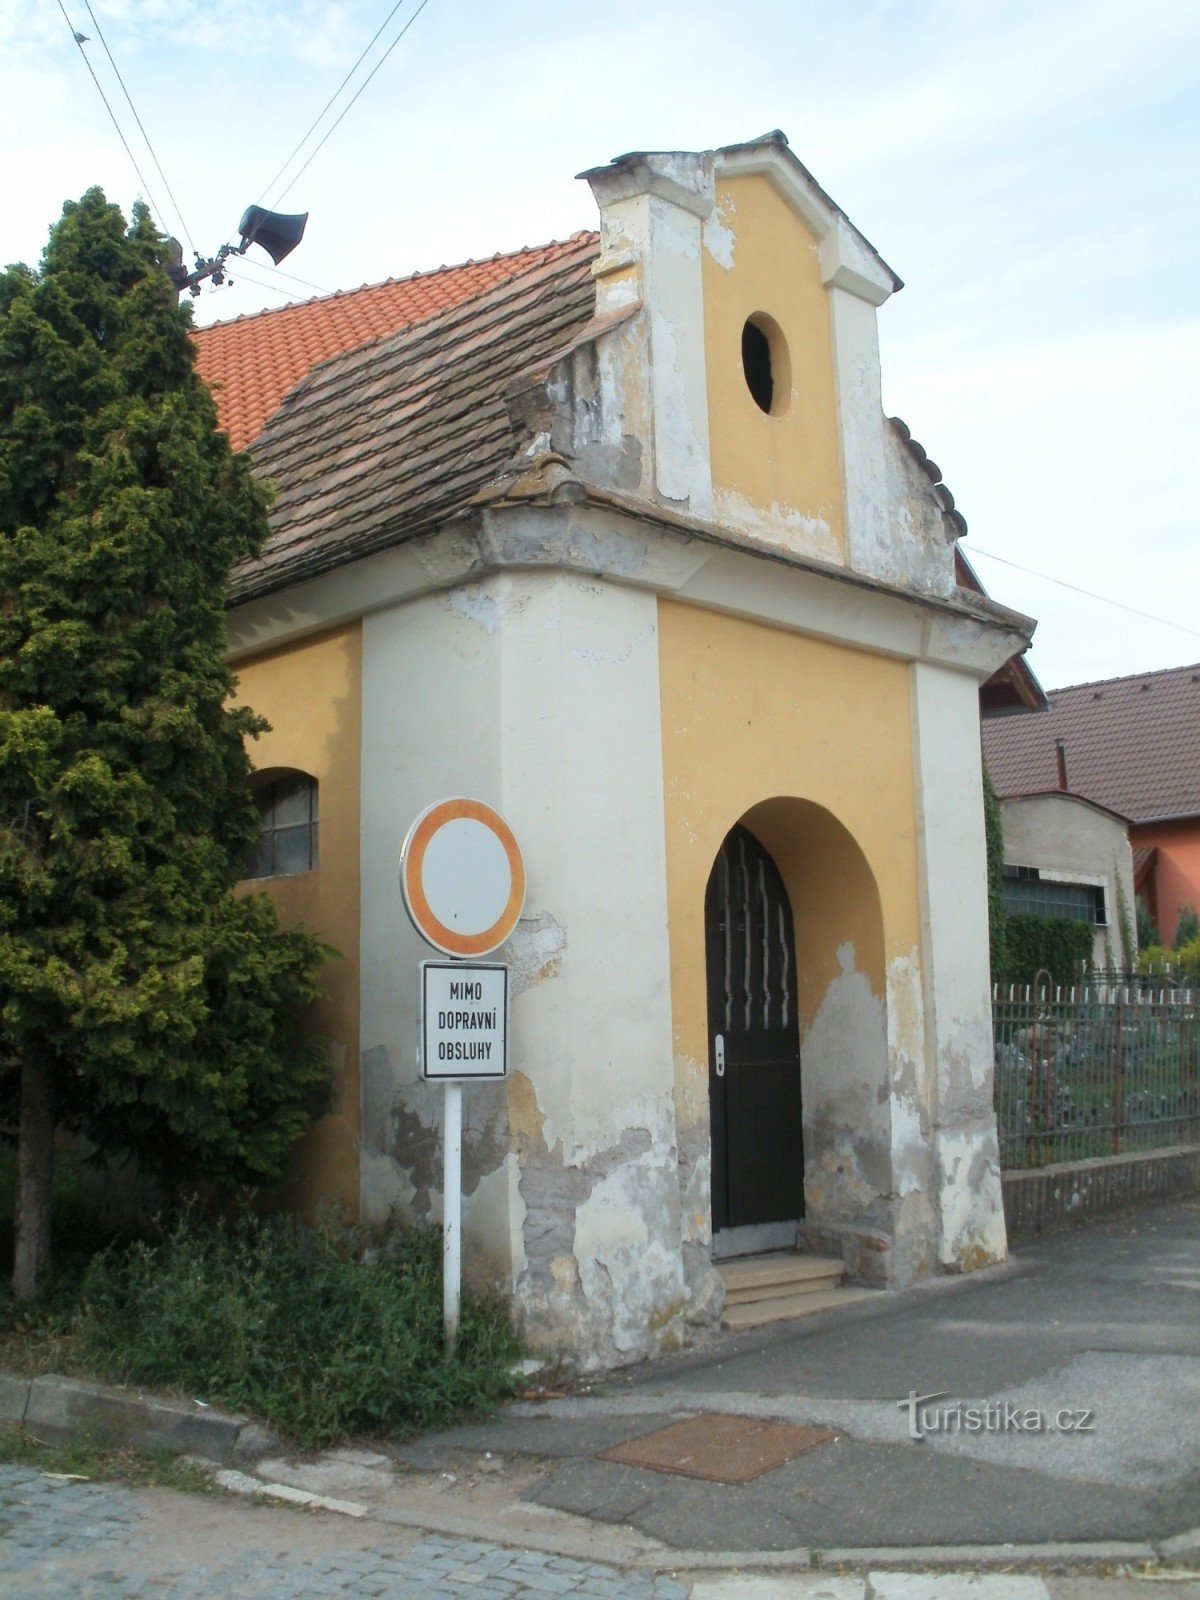 Hradec Králové - Plotiště nad Labem - Szent Kápolna. Isidore